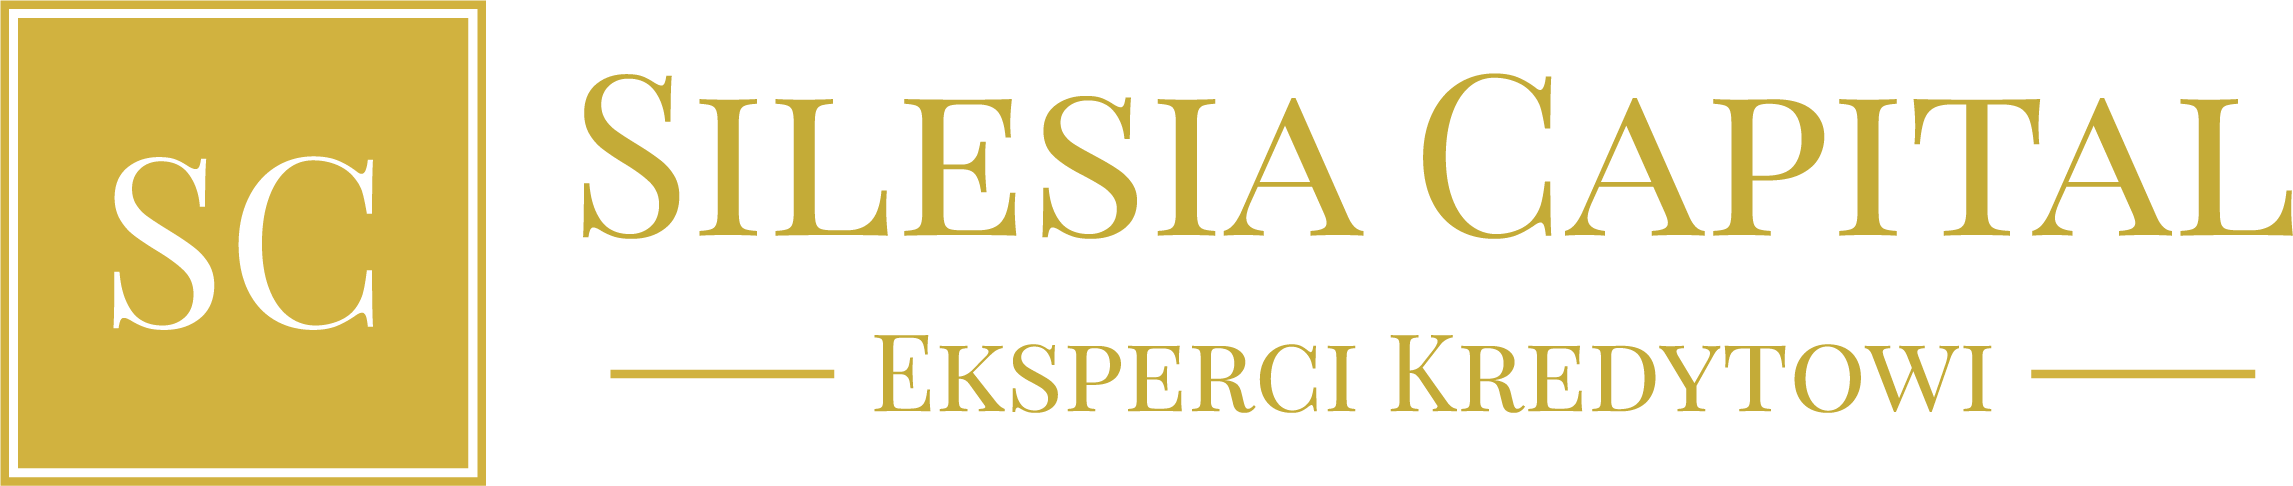 Silesiacapital